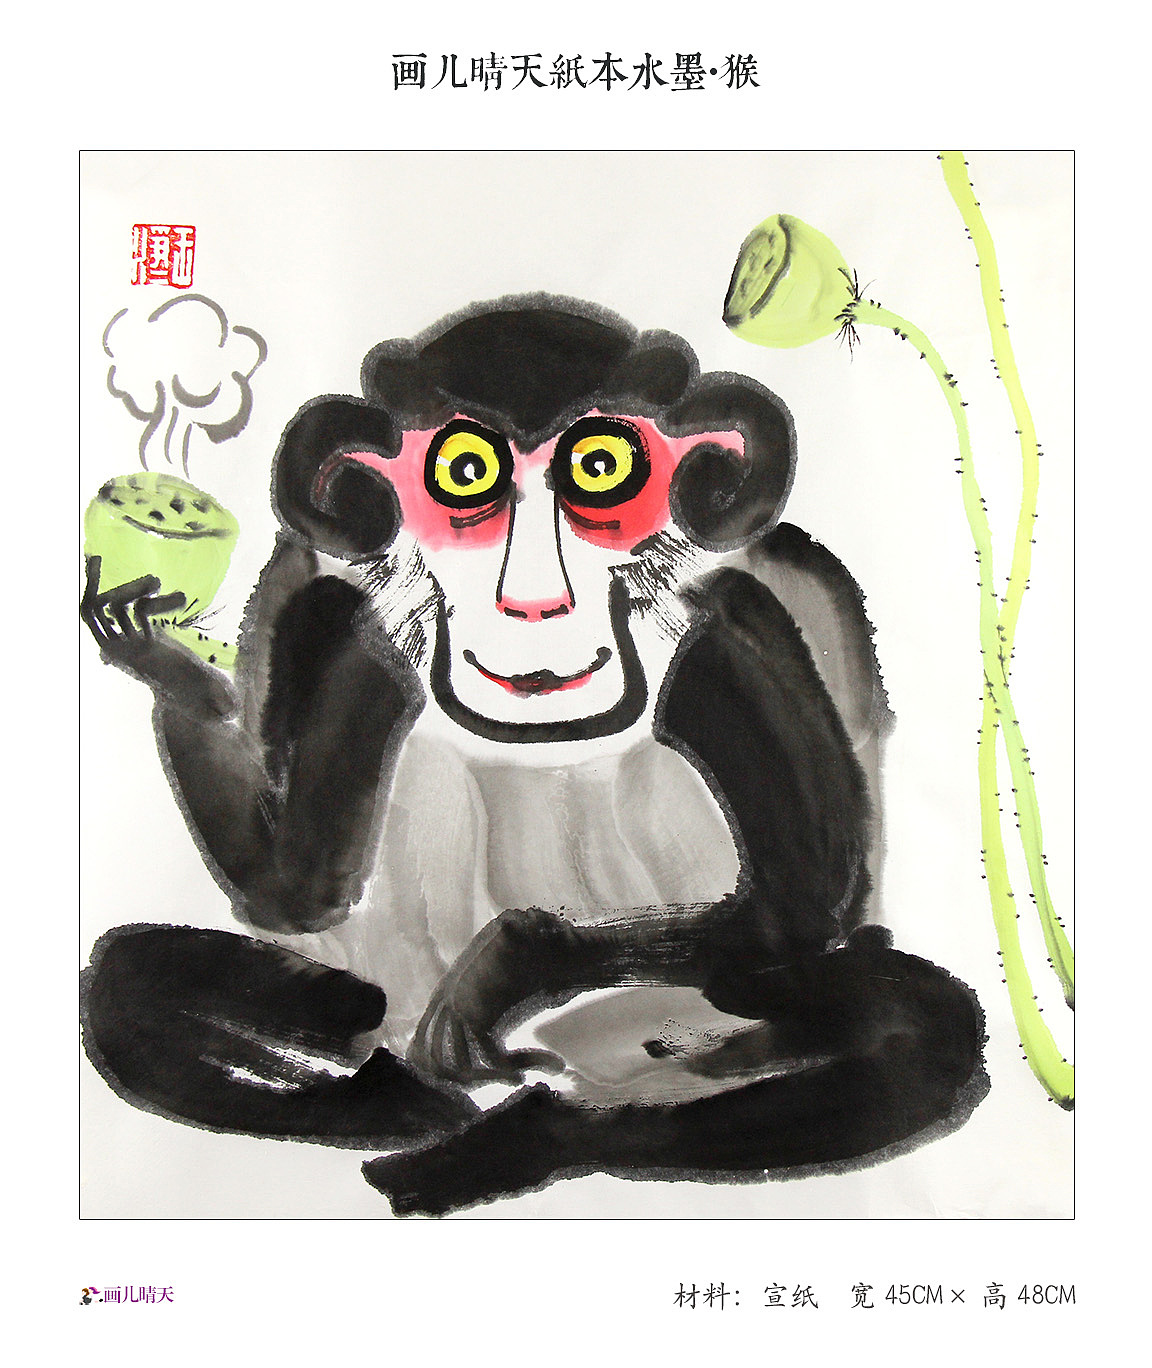 儿童3-6岁儿童美术画 漂亮简笔画猴子的画法步骤图（一年级学生画画作品） - 有点网 - 好手艺